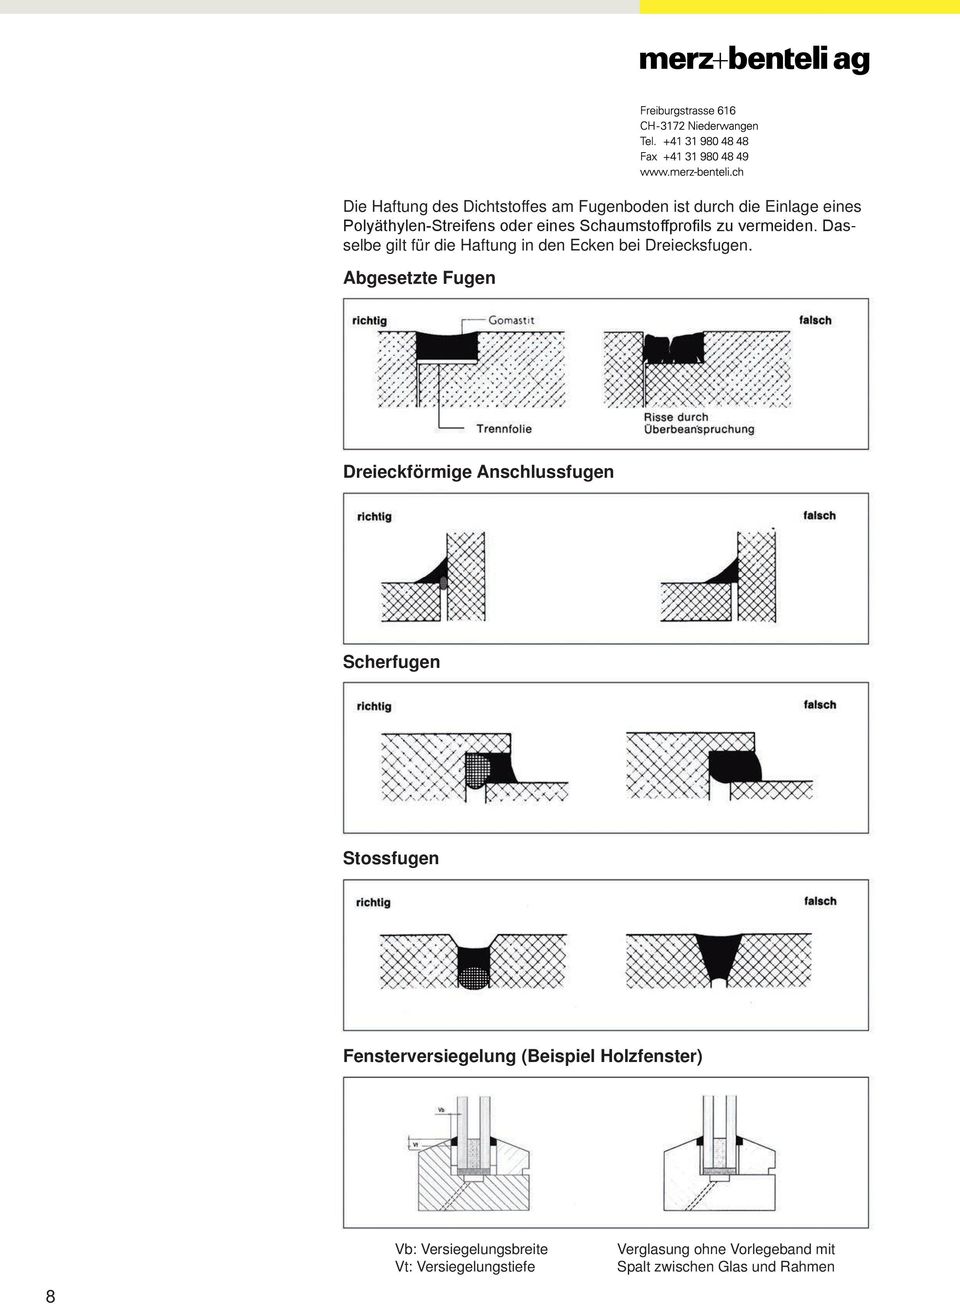 Abgesetzte Fugen Dreieckförmige Anschlussfugen Scherfugen Stossfugen Fensterversiegelung (Beispiel